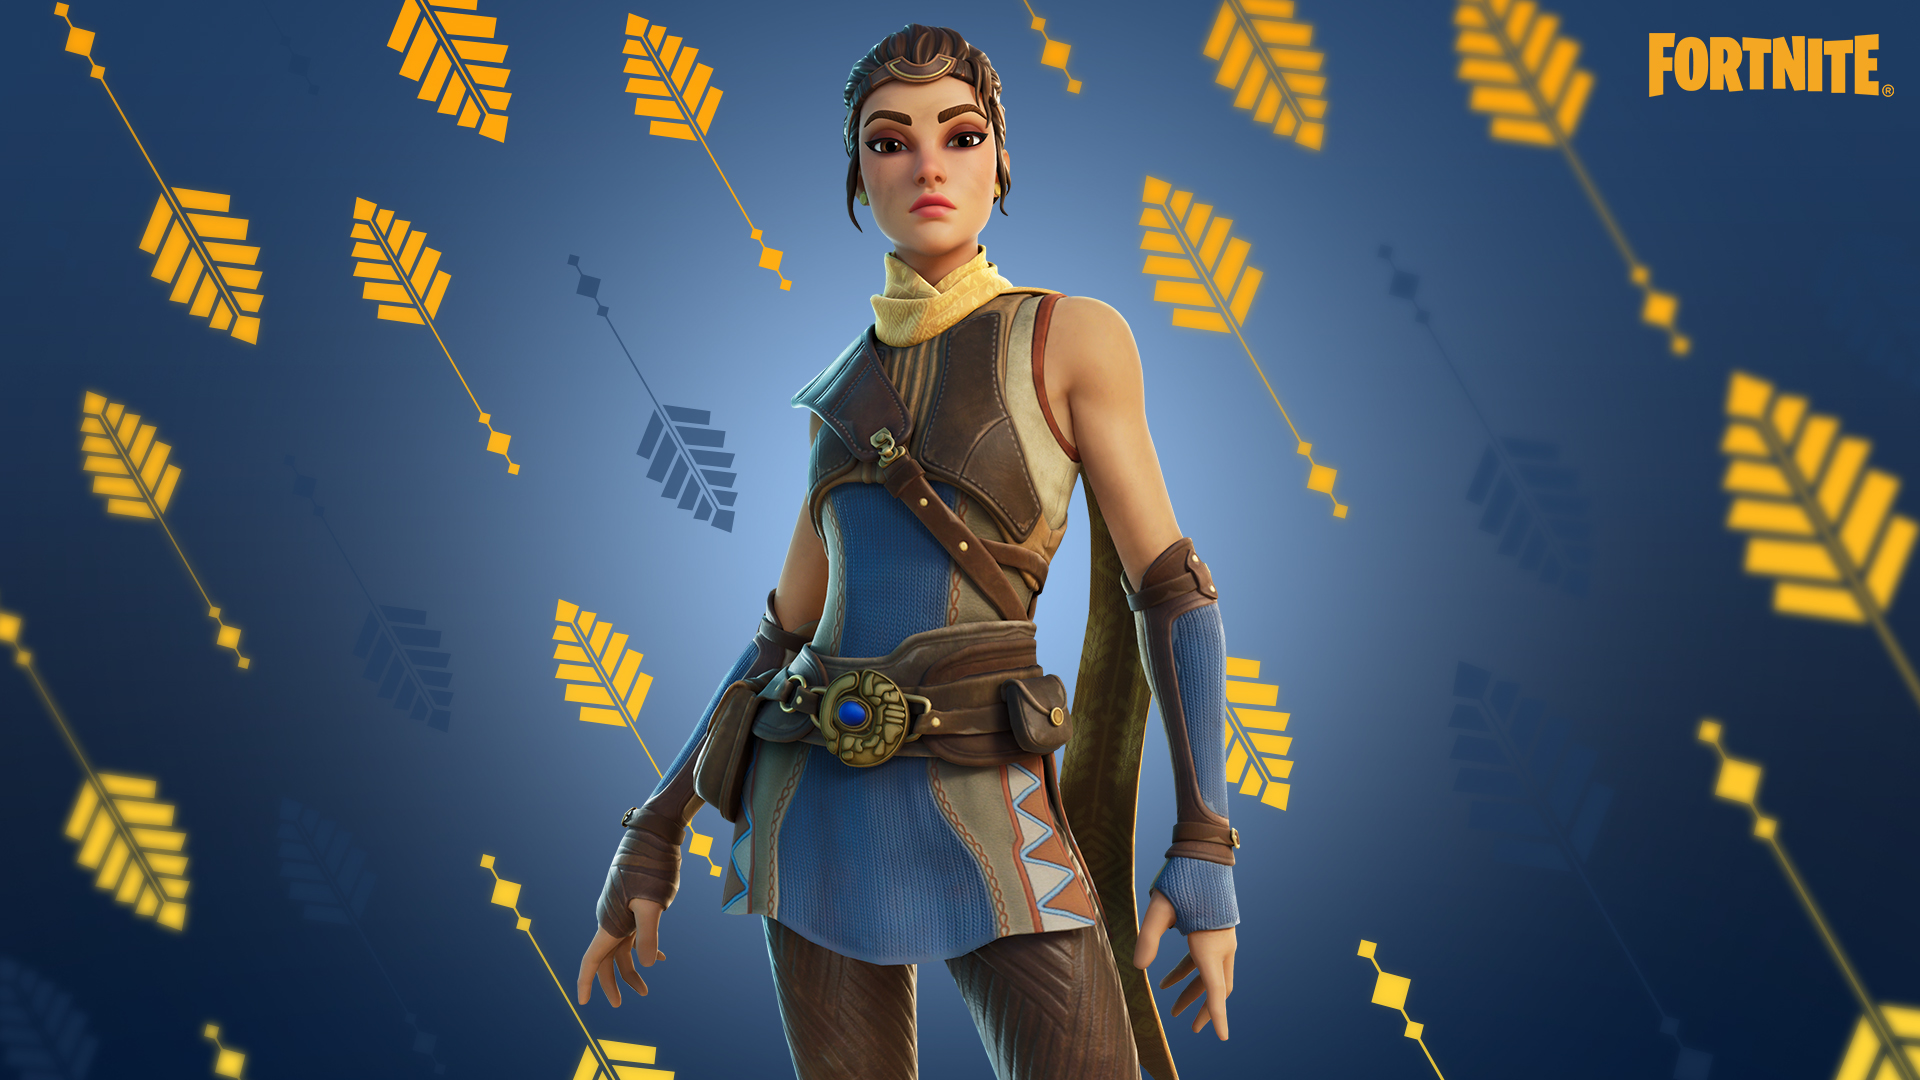 Kulit Windwalker Echo Fortnite berdasarkan karakter dari demo Unreal Engine 5, dia mengenakan pelindung kulit di atas gaun biru